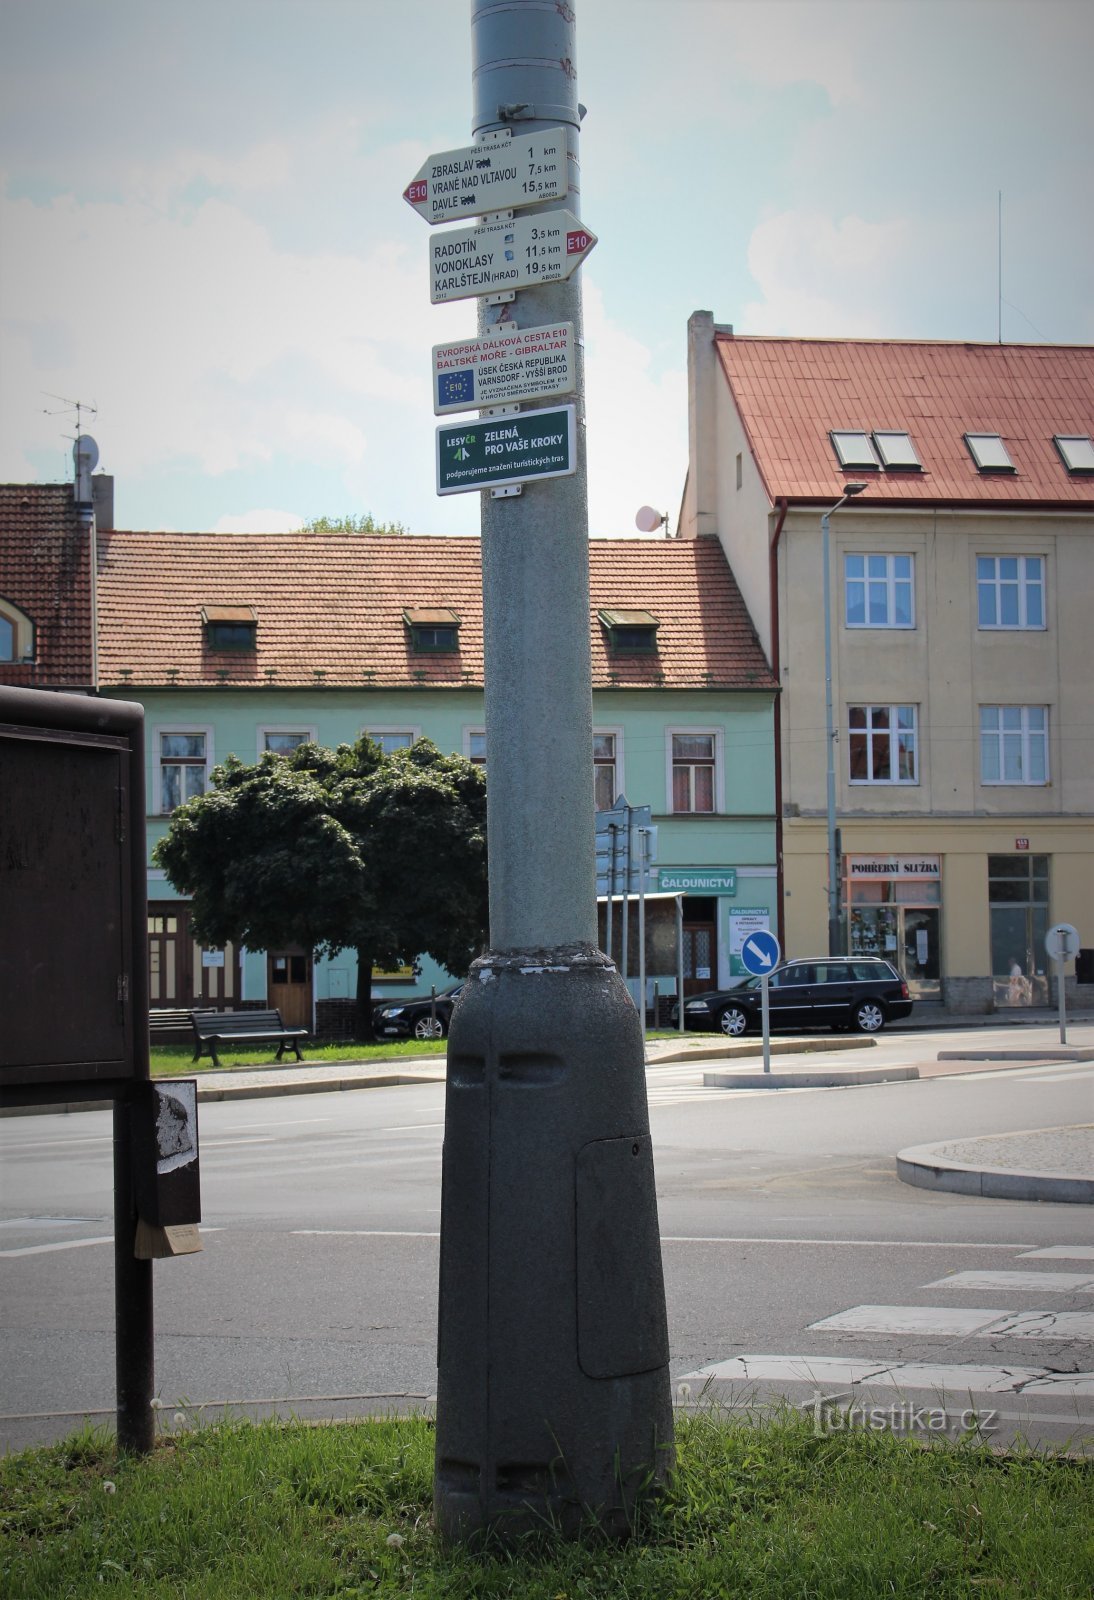 Răscruce turistică Zbraslav náměstí